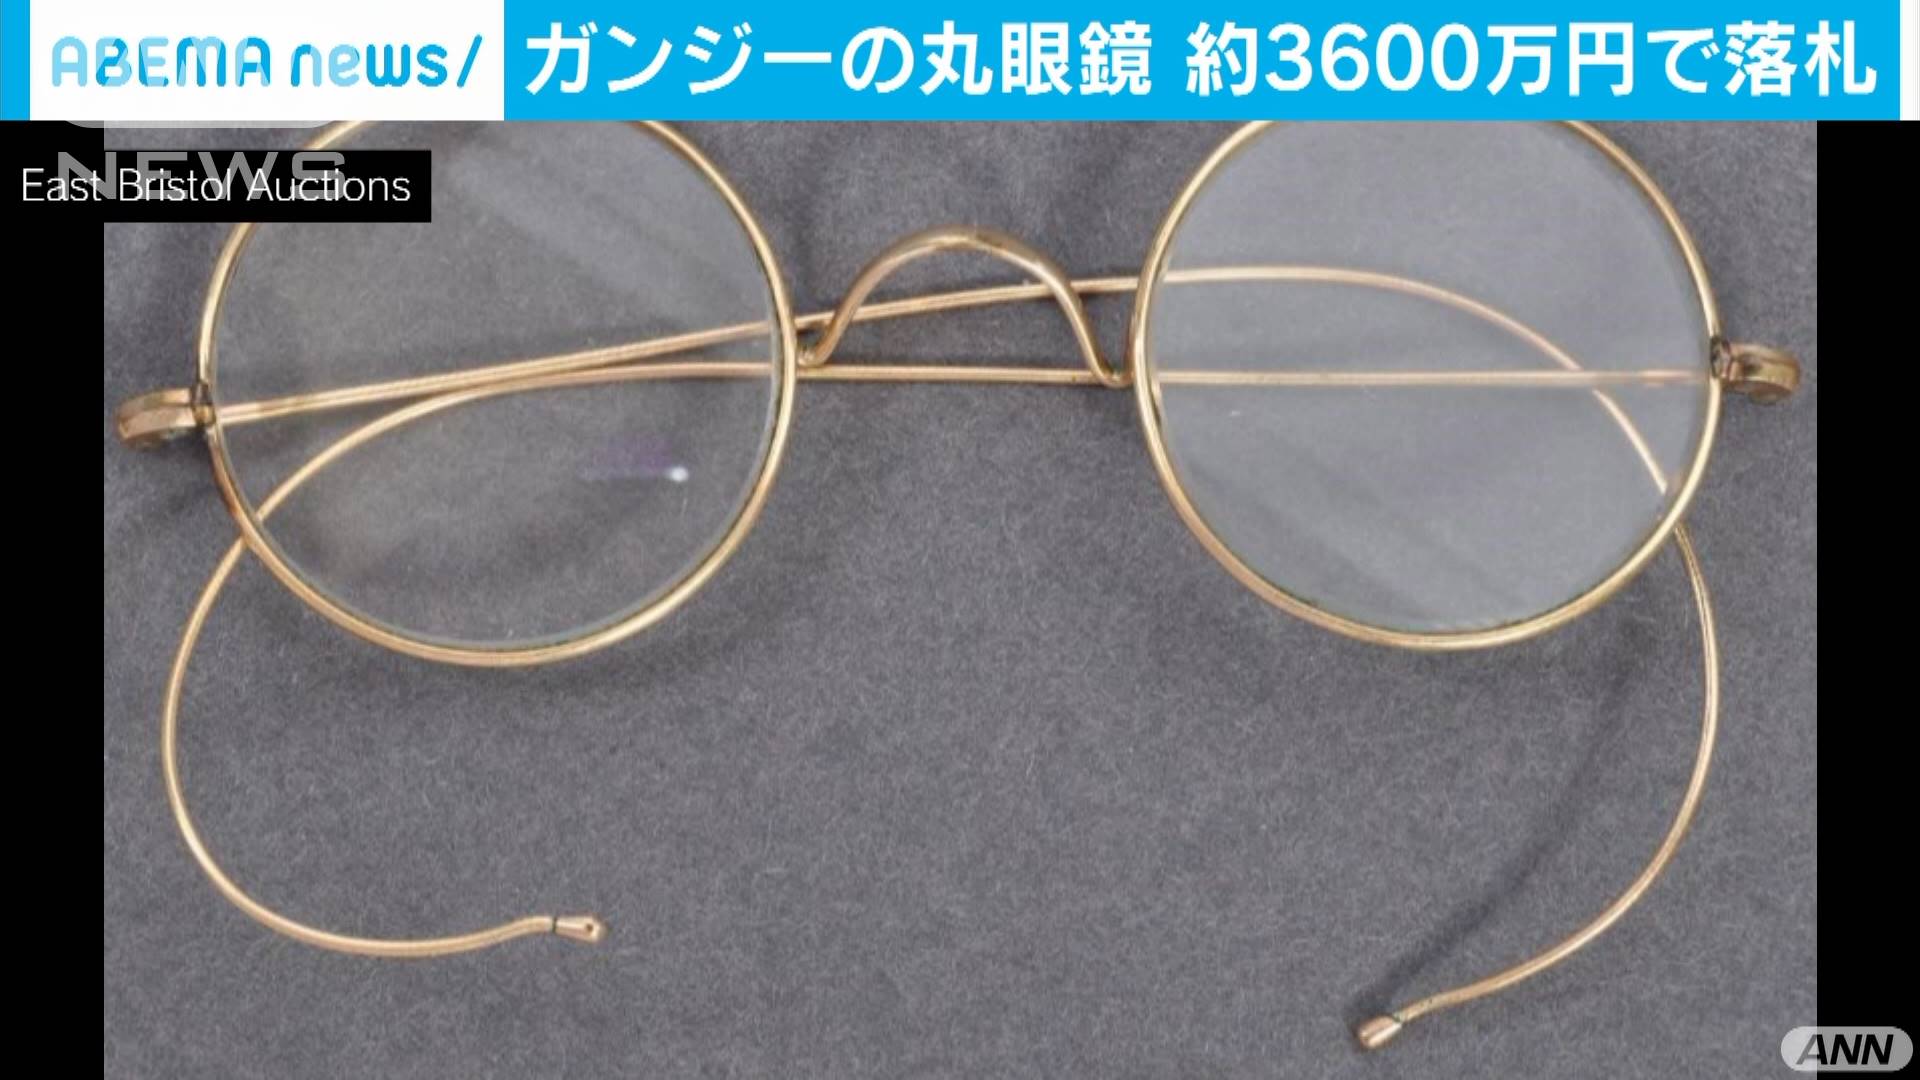 ガンジーの丸眼鏡 英オークションで3600万円で落札